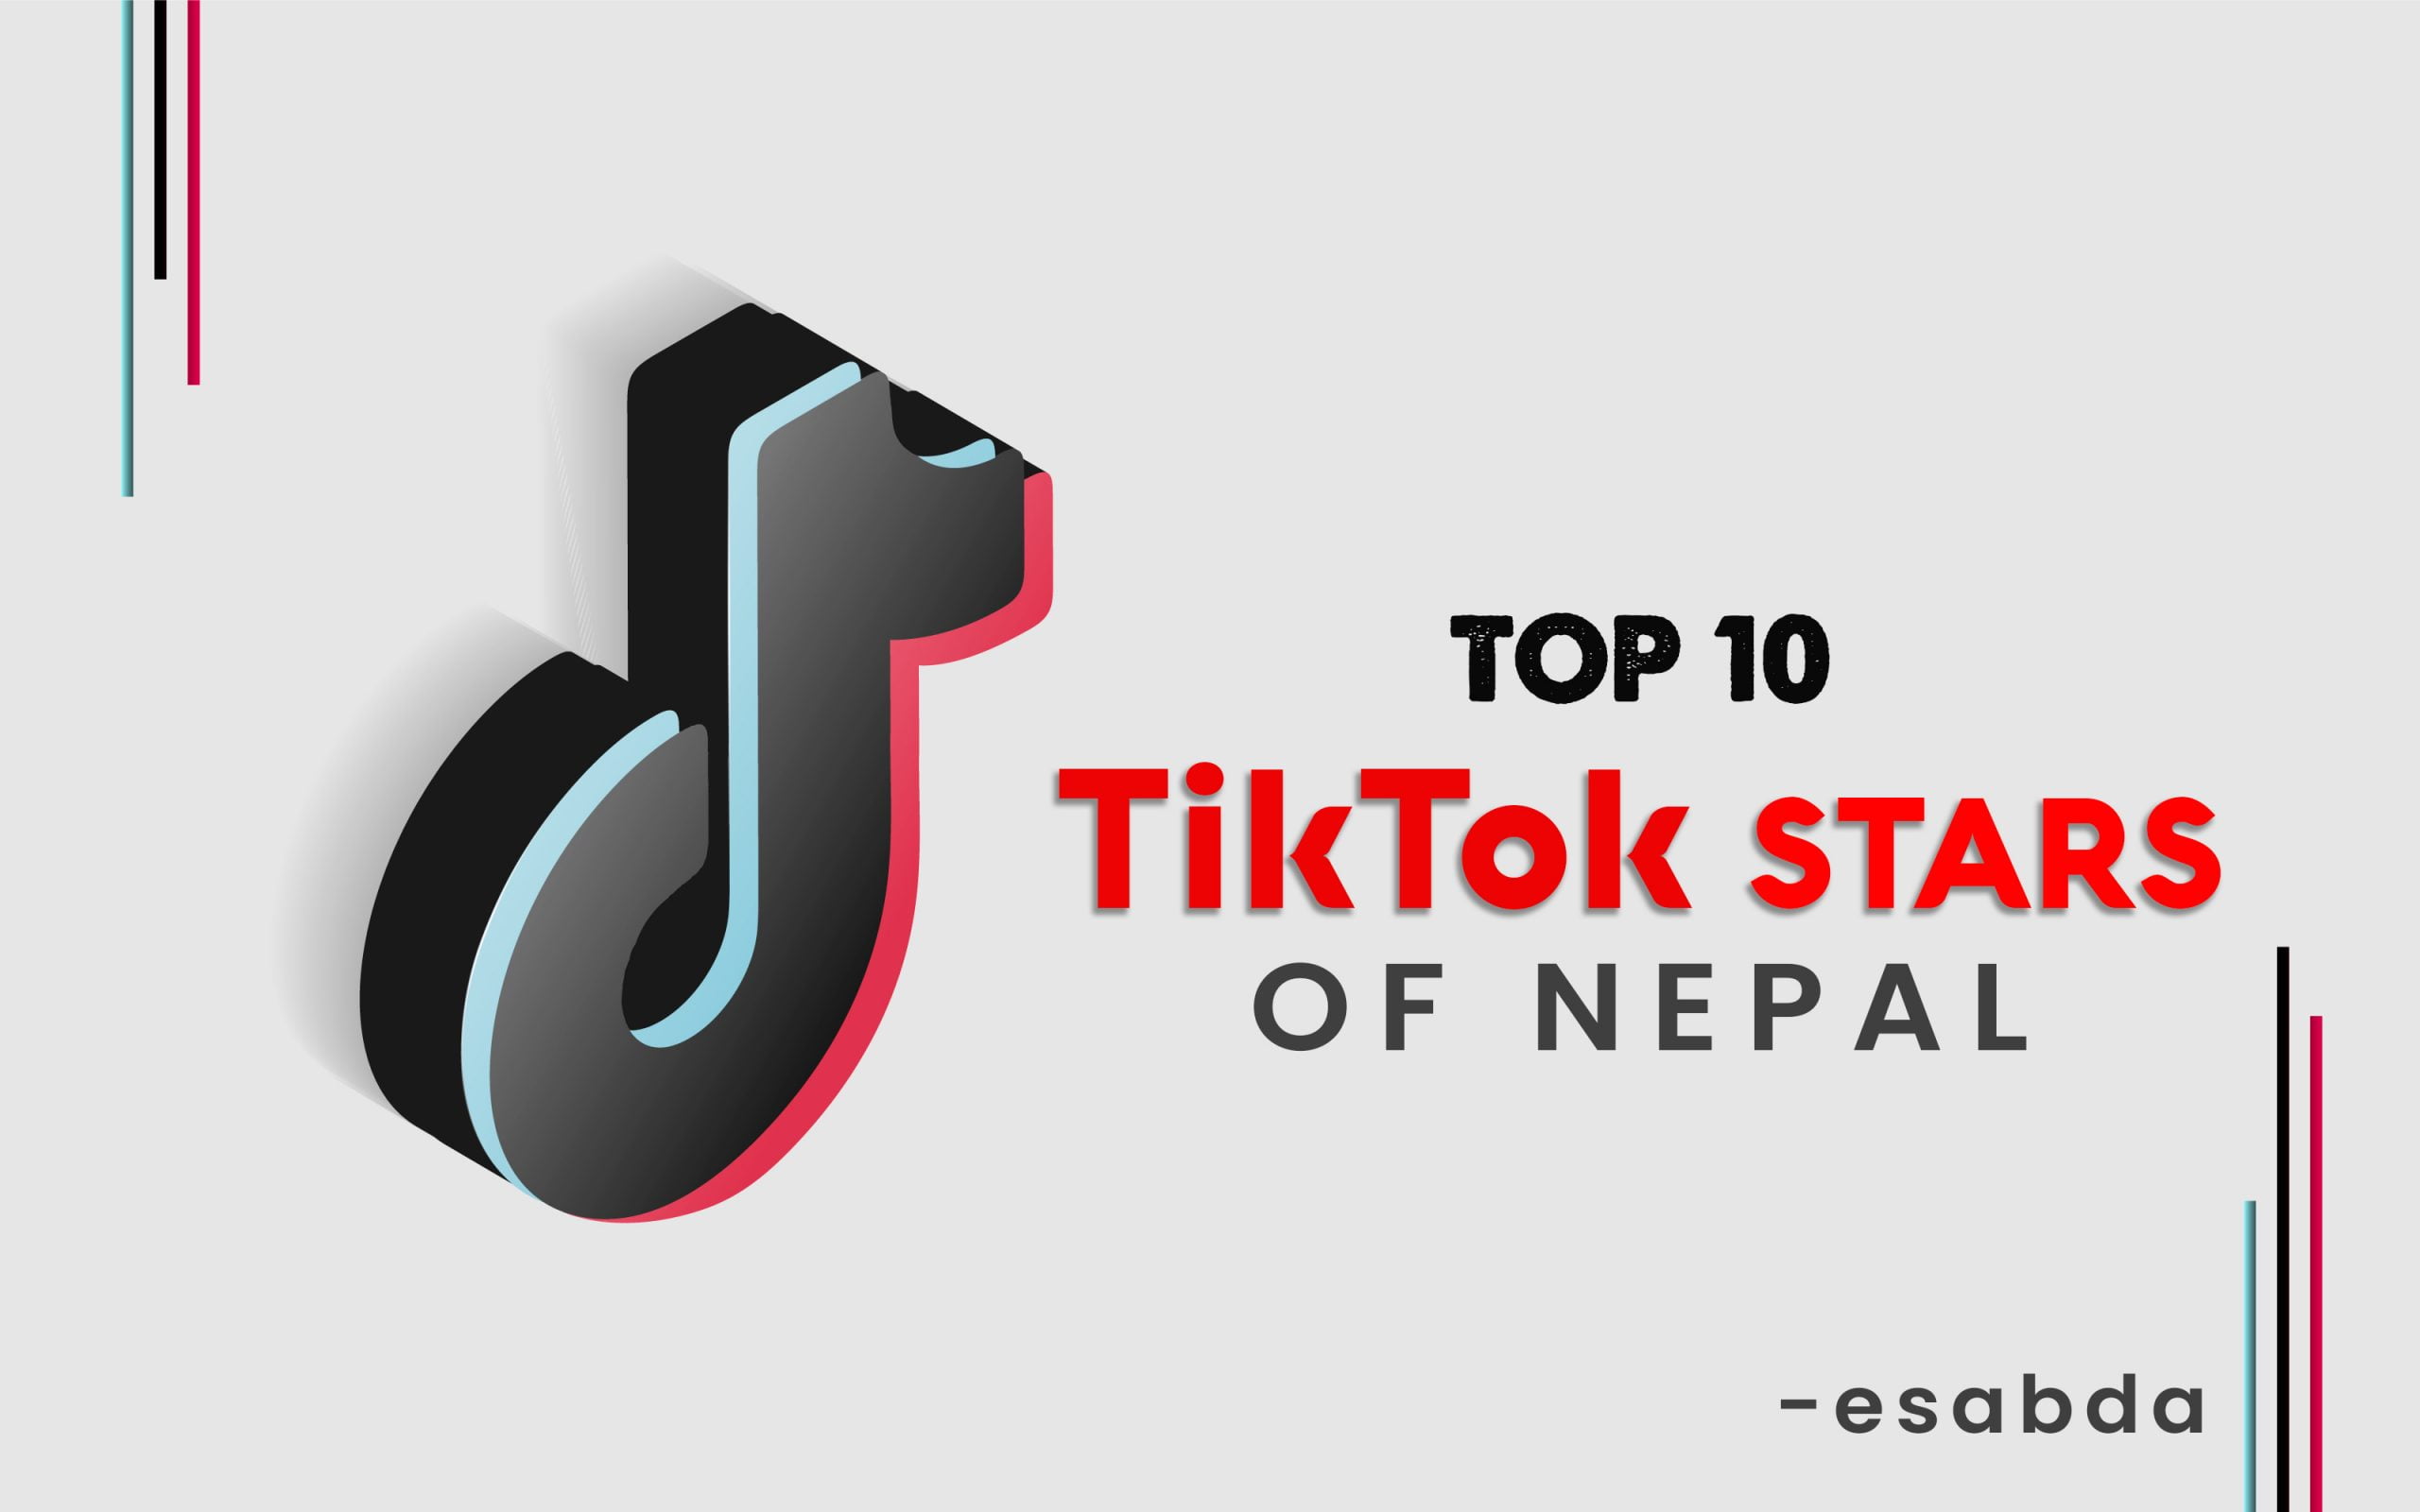 Top TikTok stars of Nepal